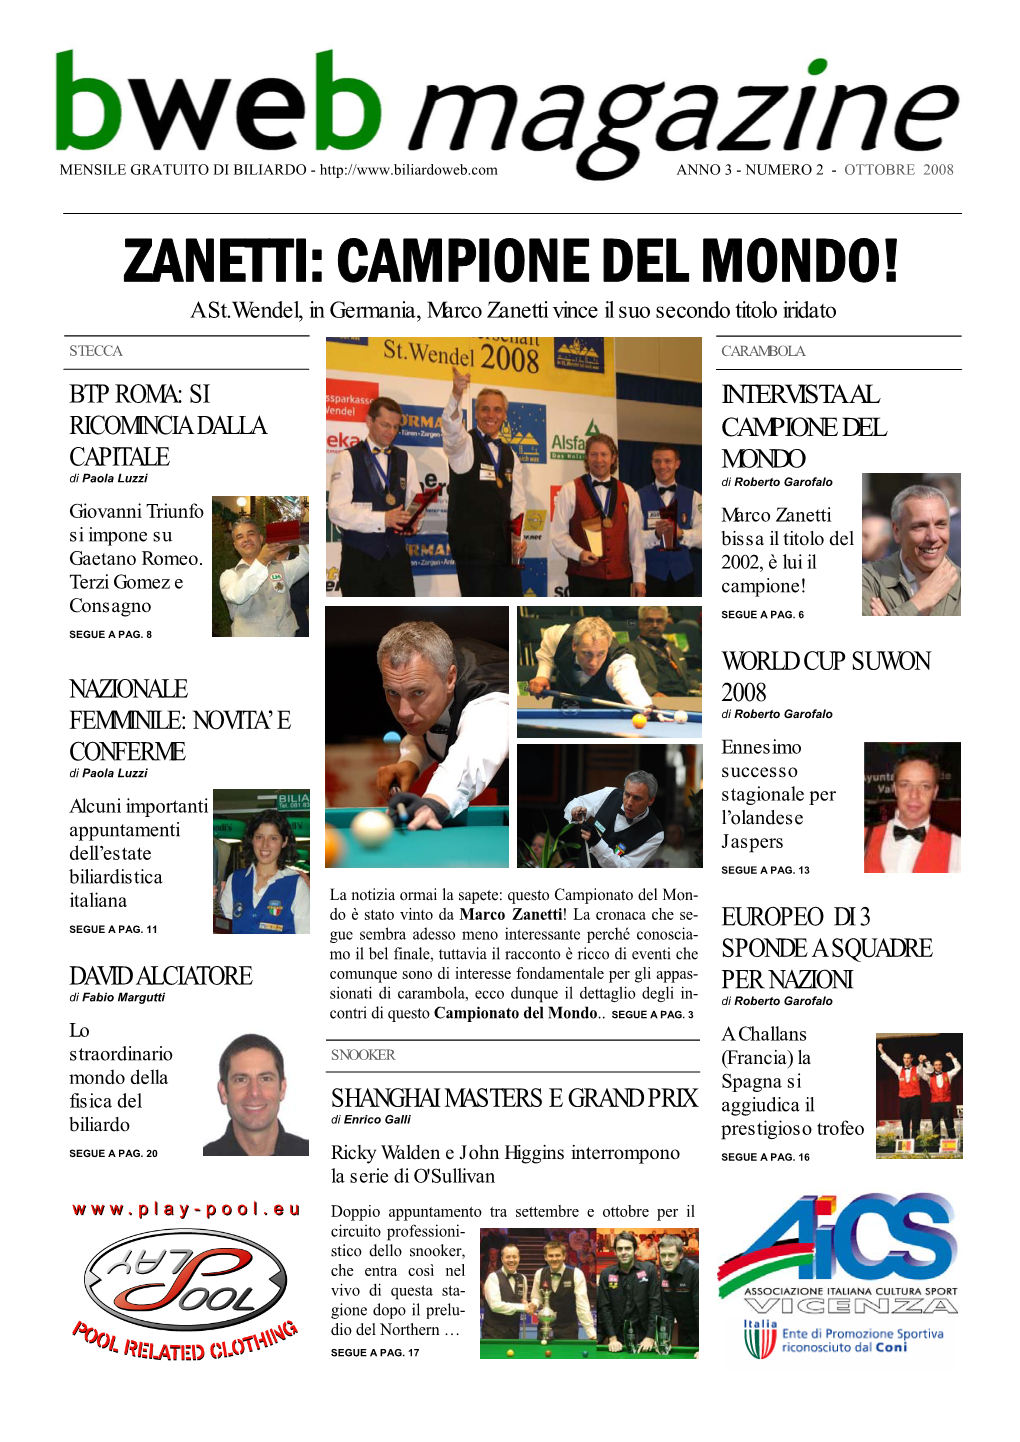 ZANETTI: CAMPIONE DEL MONDO! a St.Wendel, in Germania, Marco Zanetti Vince Il Suo Secondo Titolo Iridato